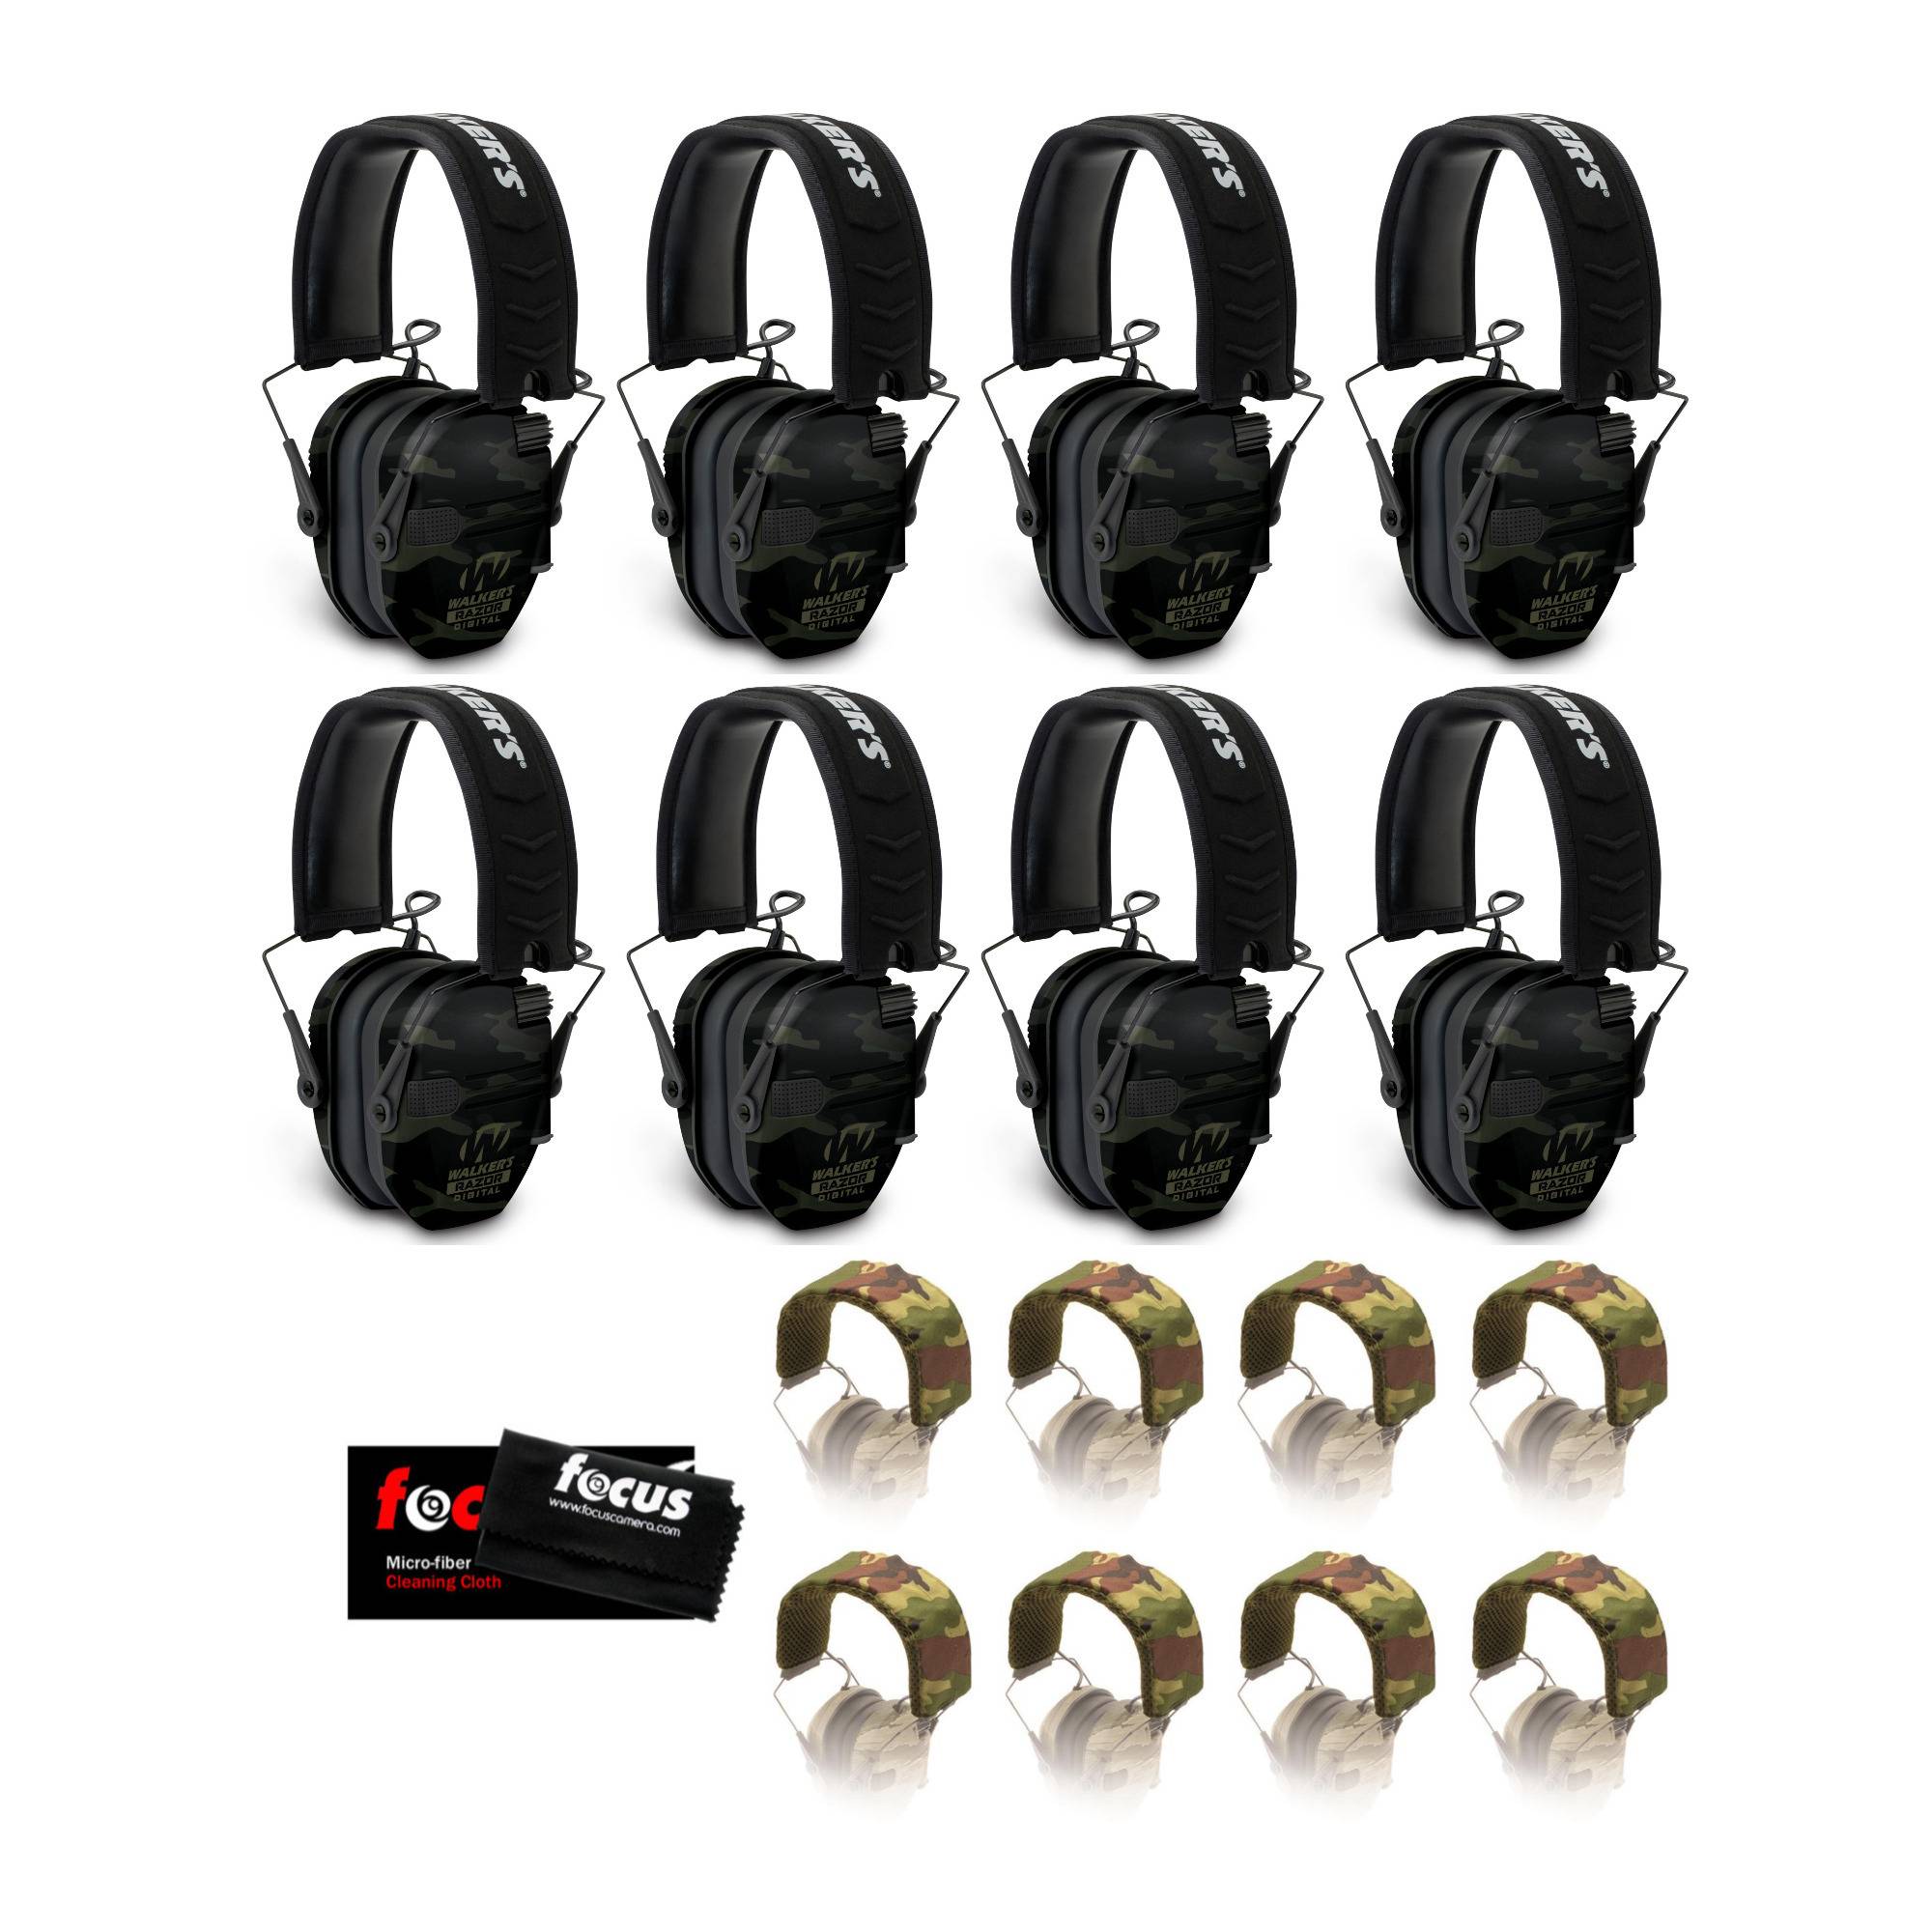 Walker's Razor Digital Ear Muffs (Multi Camo) Base Bundle (8-Pack)